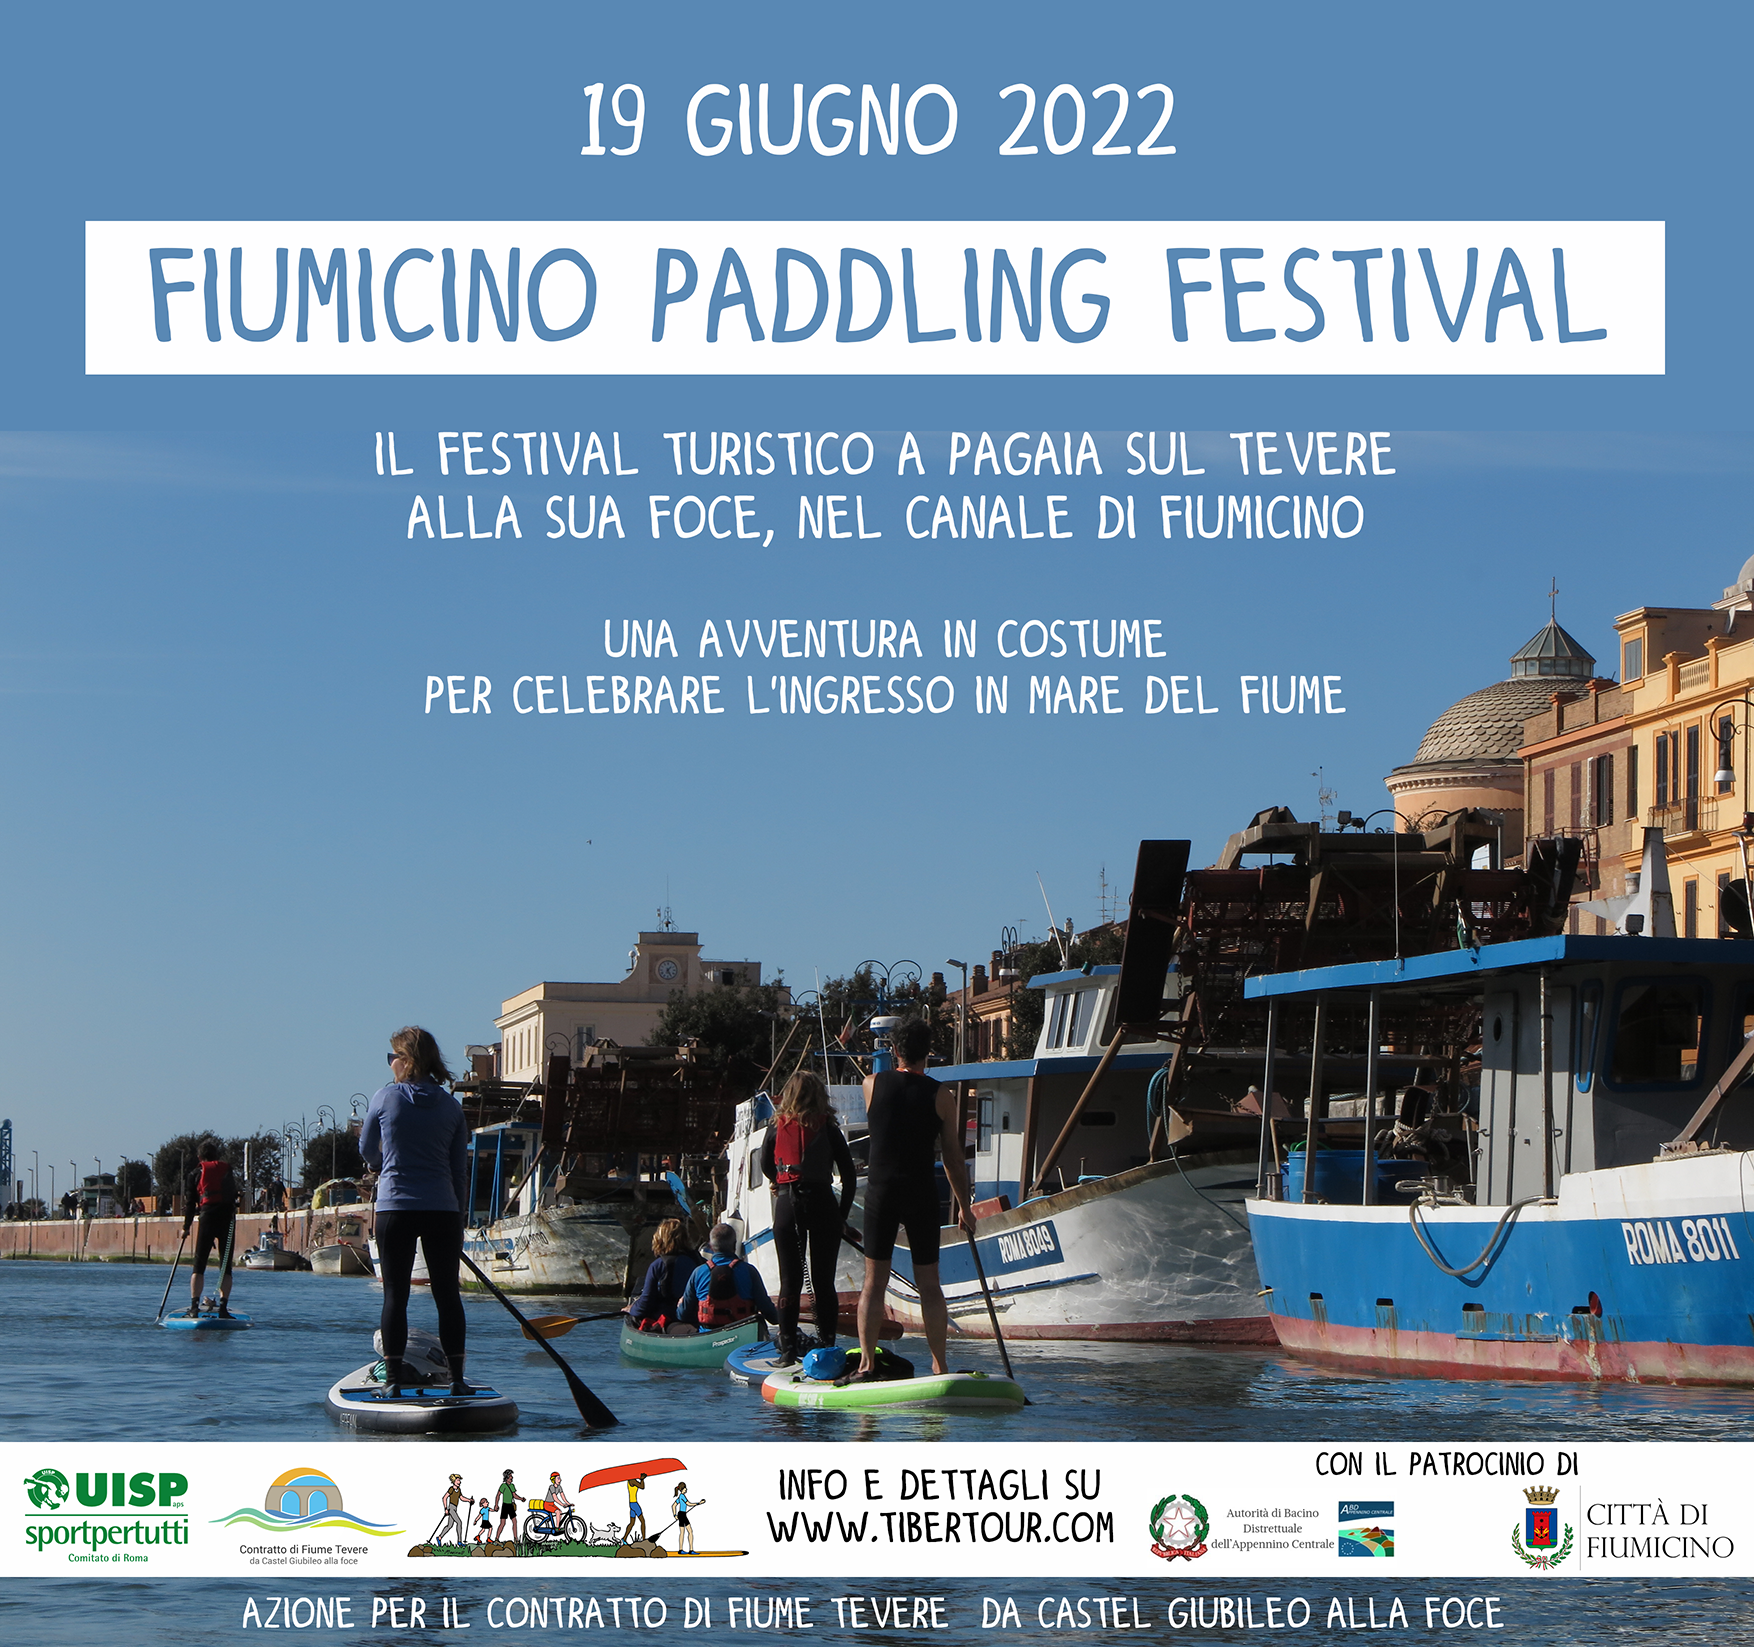 19.6.22 Fiumicino Paddling Festival